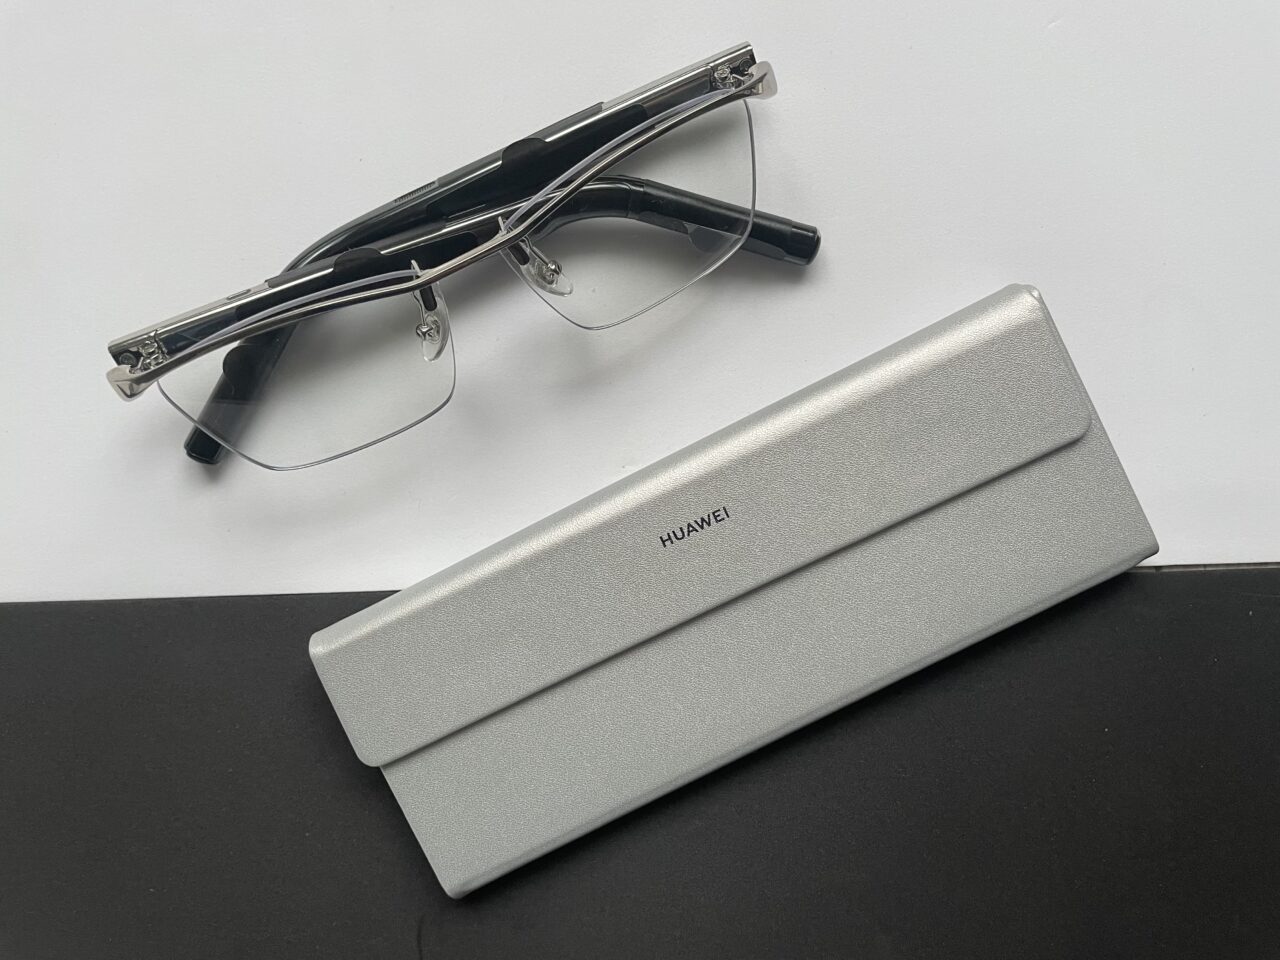 Okulary bezramkowe położone obok metalowego etui z logo Huawei, na białym i czarnym tle.